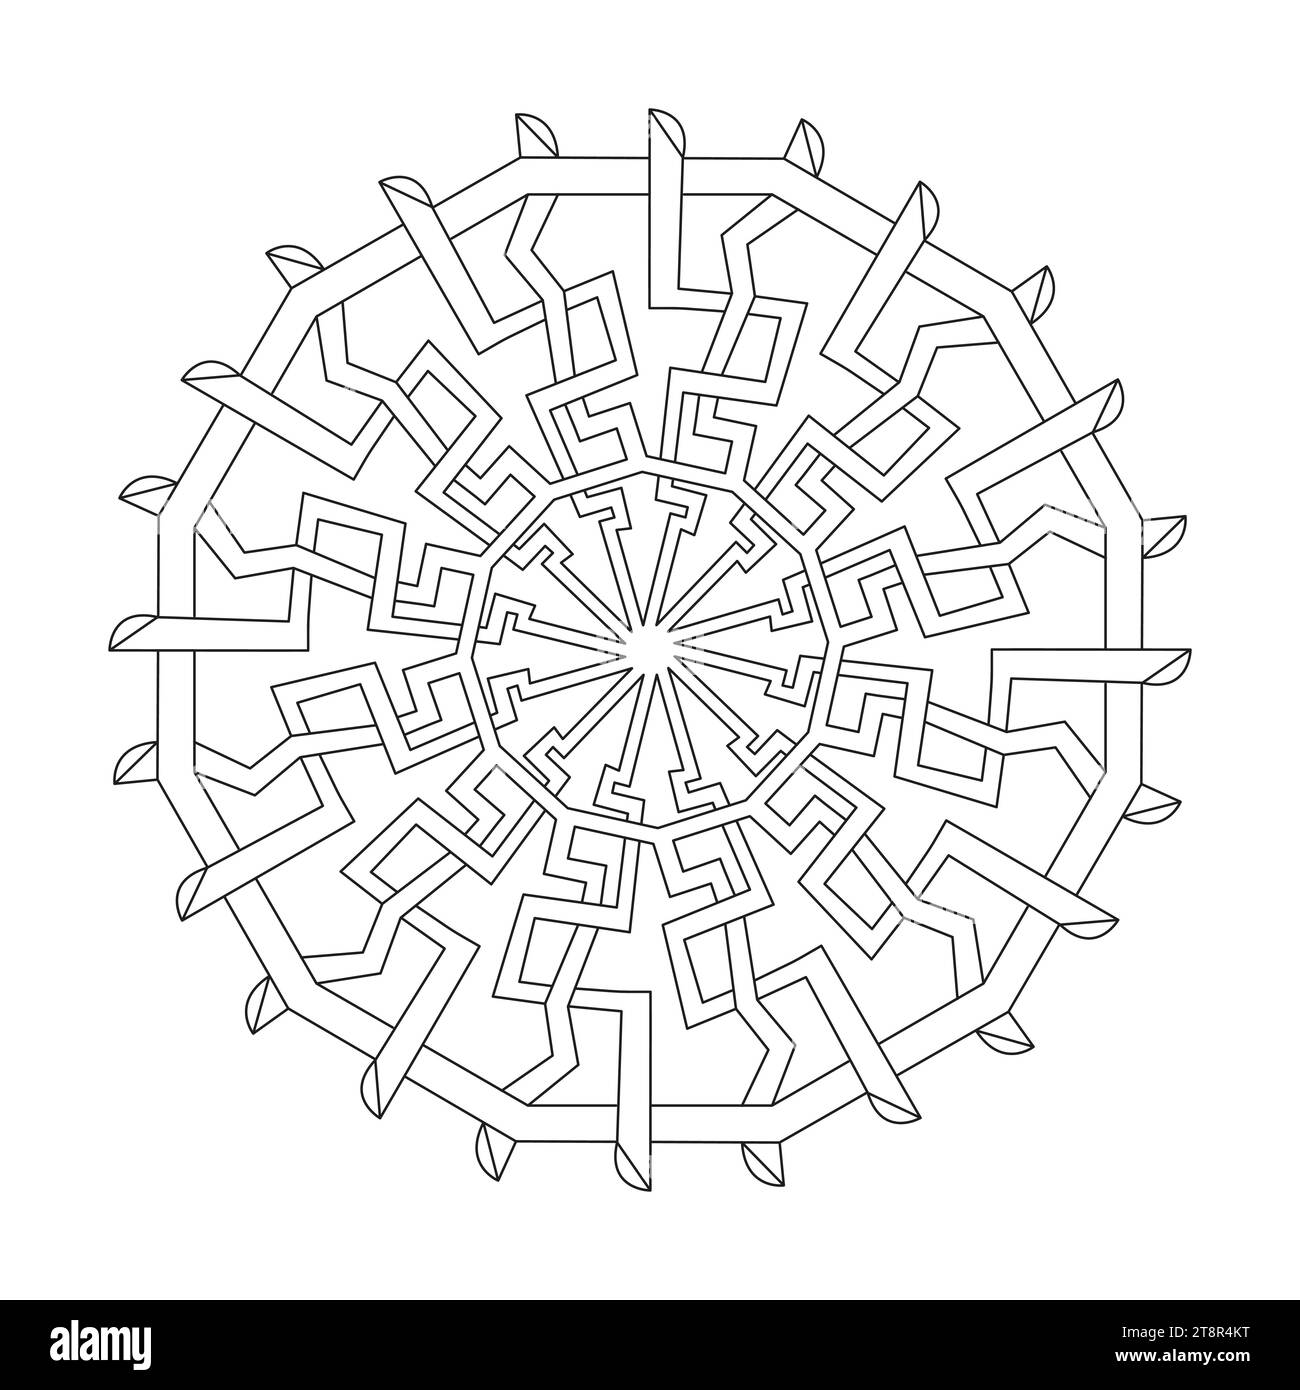 Endloses Knotensymbol im keltischen Stil Visions-Malbuchseite für das KDP-Buchinnere. Friedliche Blütenblätter, Fähigkeit zum Entspannen, Gehirnerlebnisse, Stock Vektor